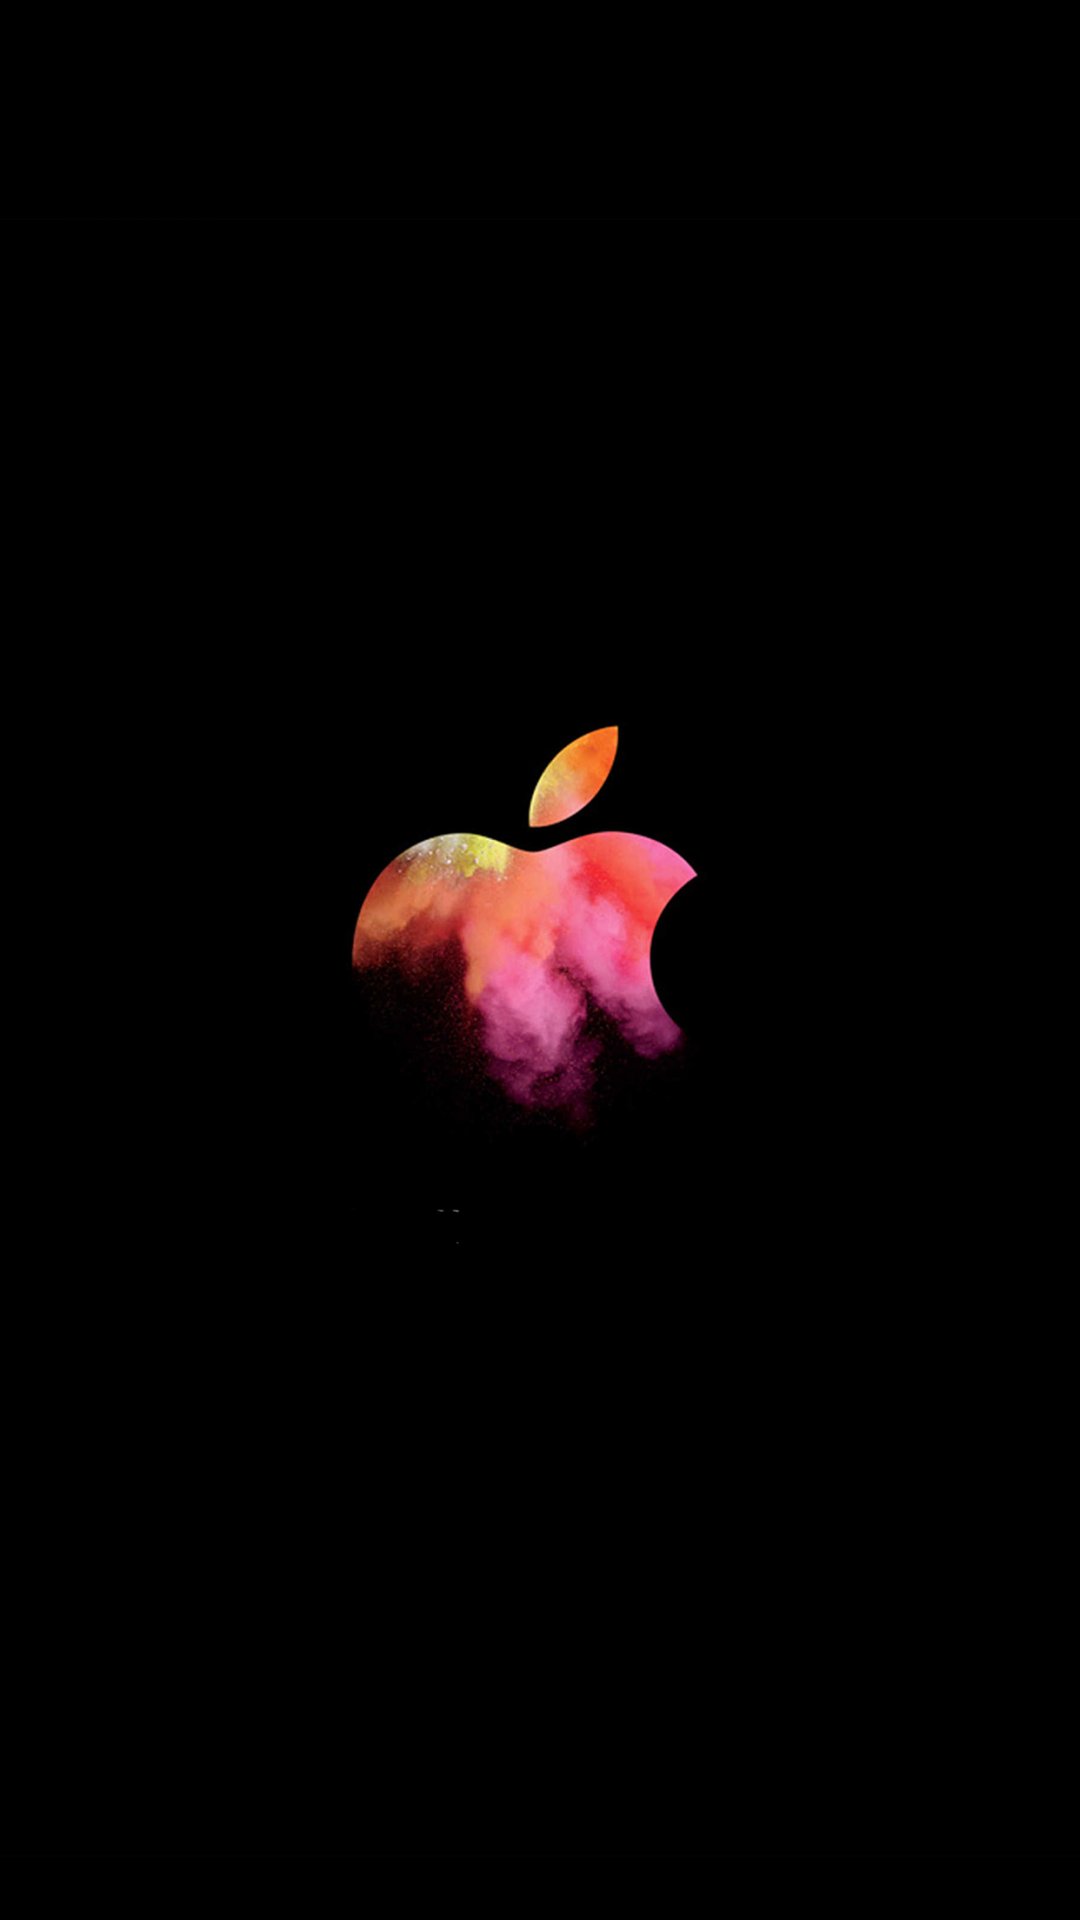 炫彩苹果品牌logo酷炫手机背景,高清图片,手机壁纸